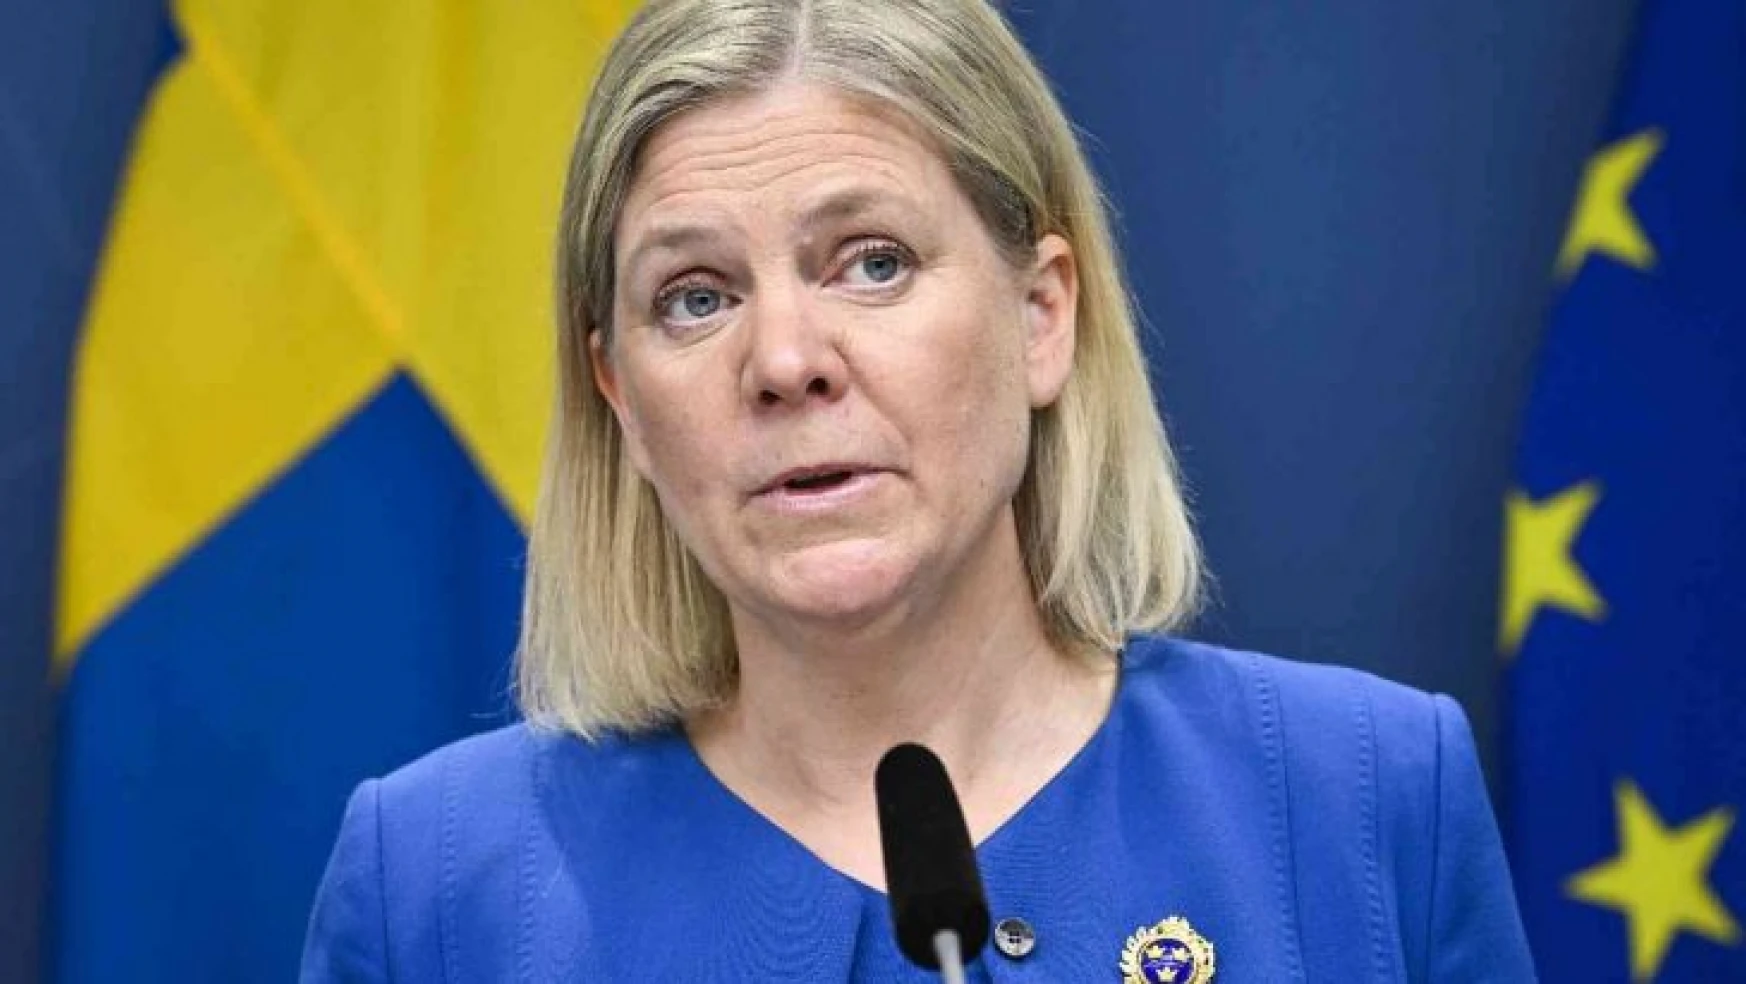 İsveç'ten NATO üyeliğine başvurma kararı